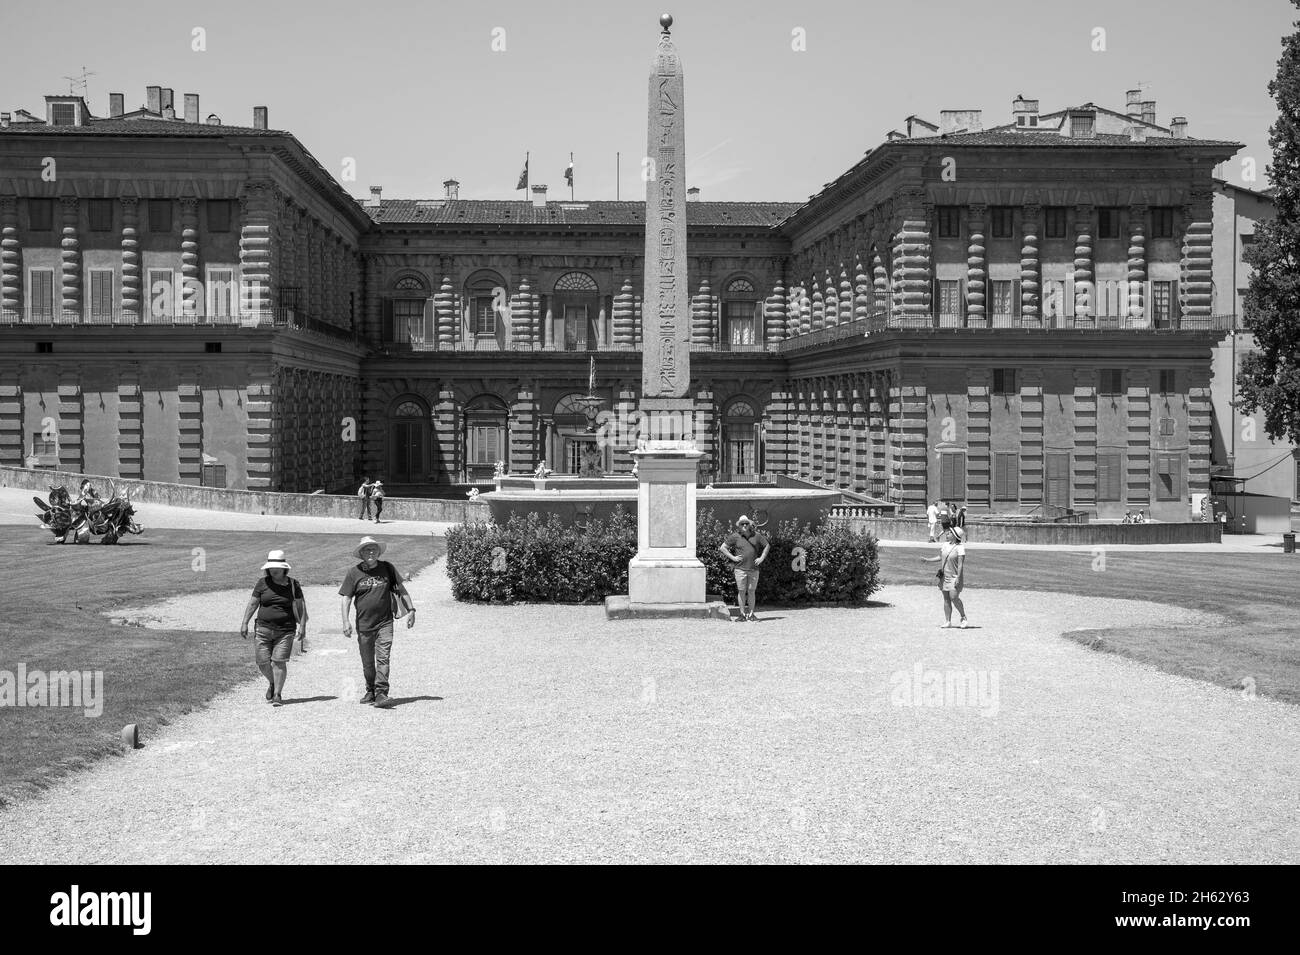 Der boboli-Gartenpark (Giardino di boboli), neptunbrunnen und ein Fernblick auf den palazzo pitti, in englischer Sprache auch Palazzo pitti genannt, in florenz, italien. Beliebte Touristenattraktion und Reiseziel. Stockfoto